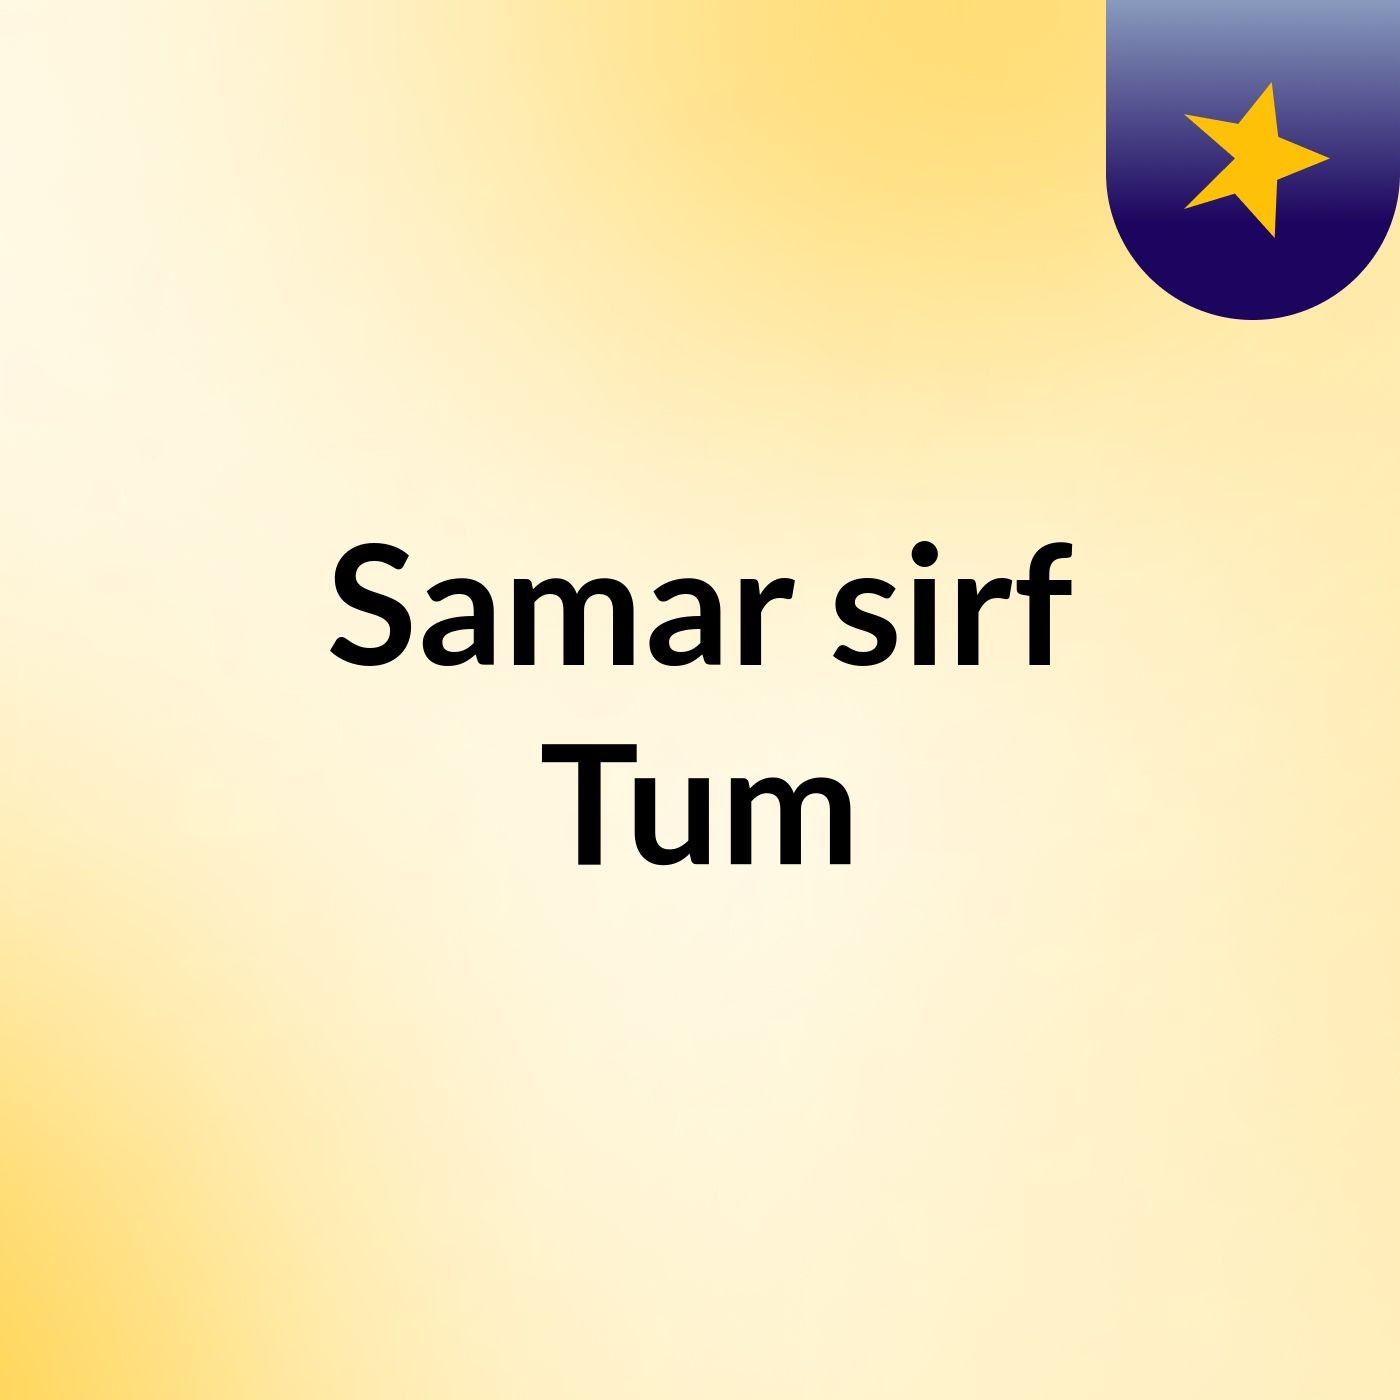 Episode 29 - Samar sirf Tum